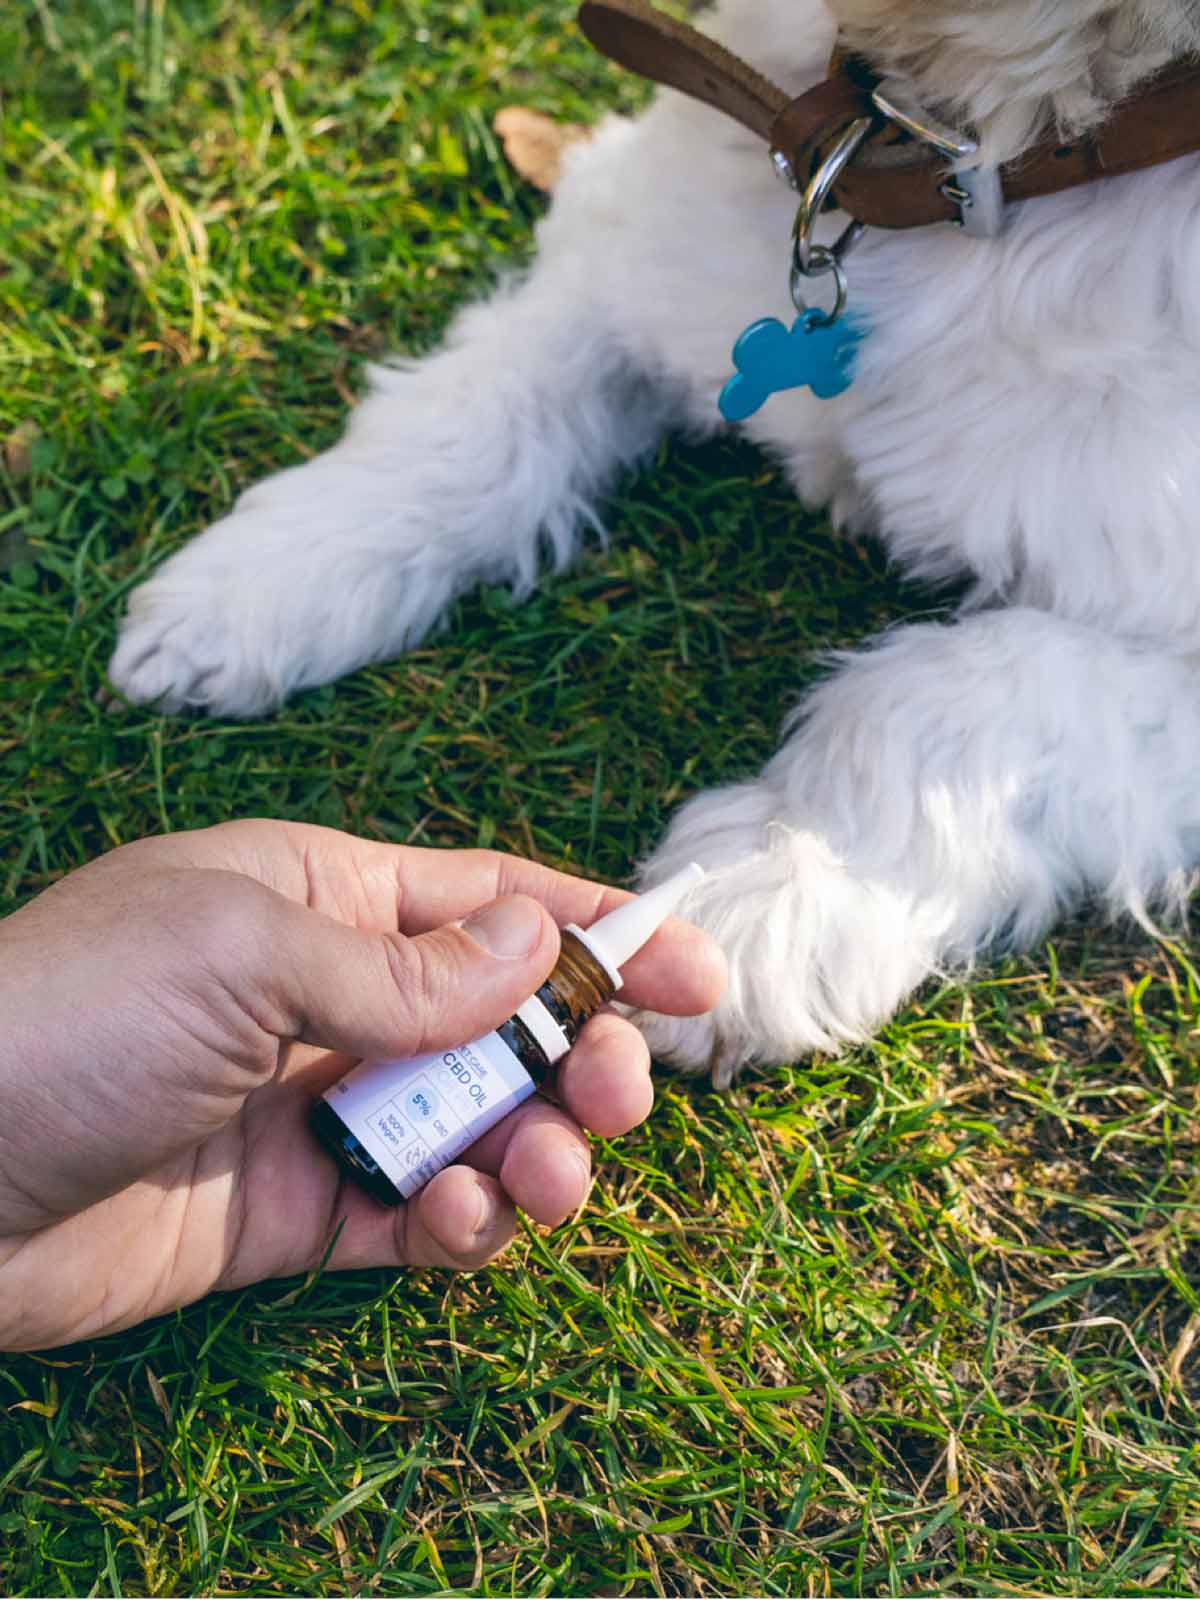 Nordic Oil CBD olie voor huisdieren (5%) vastgehouden in een hand voor een hond